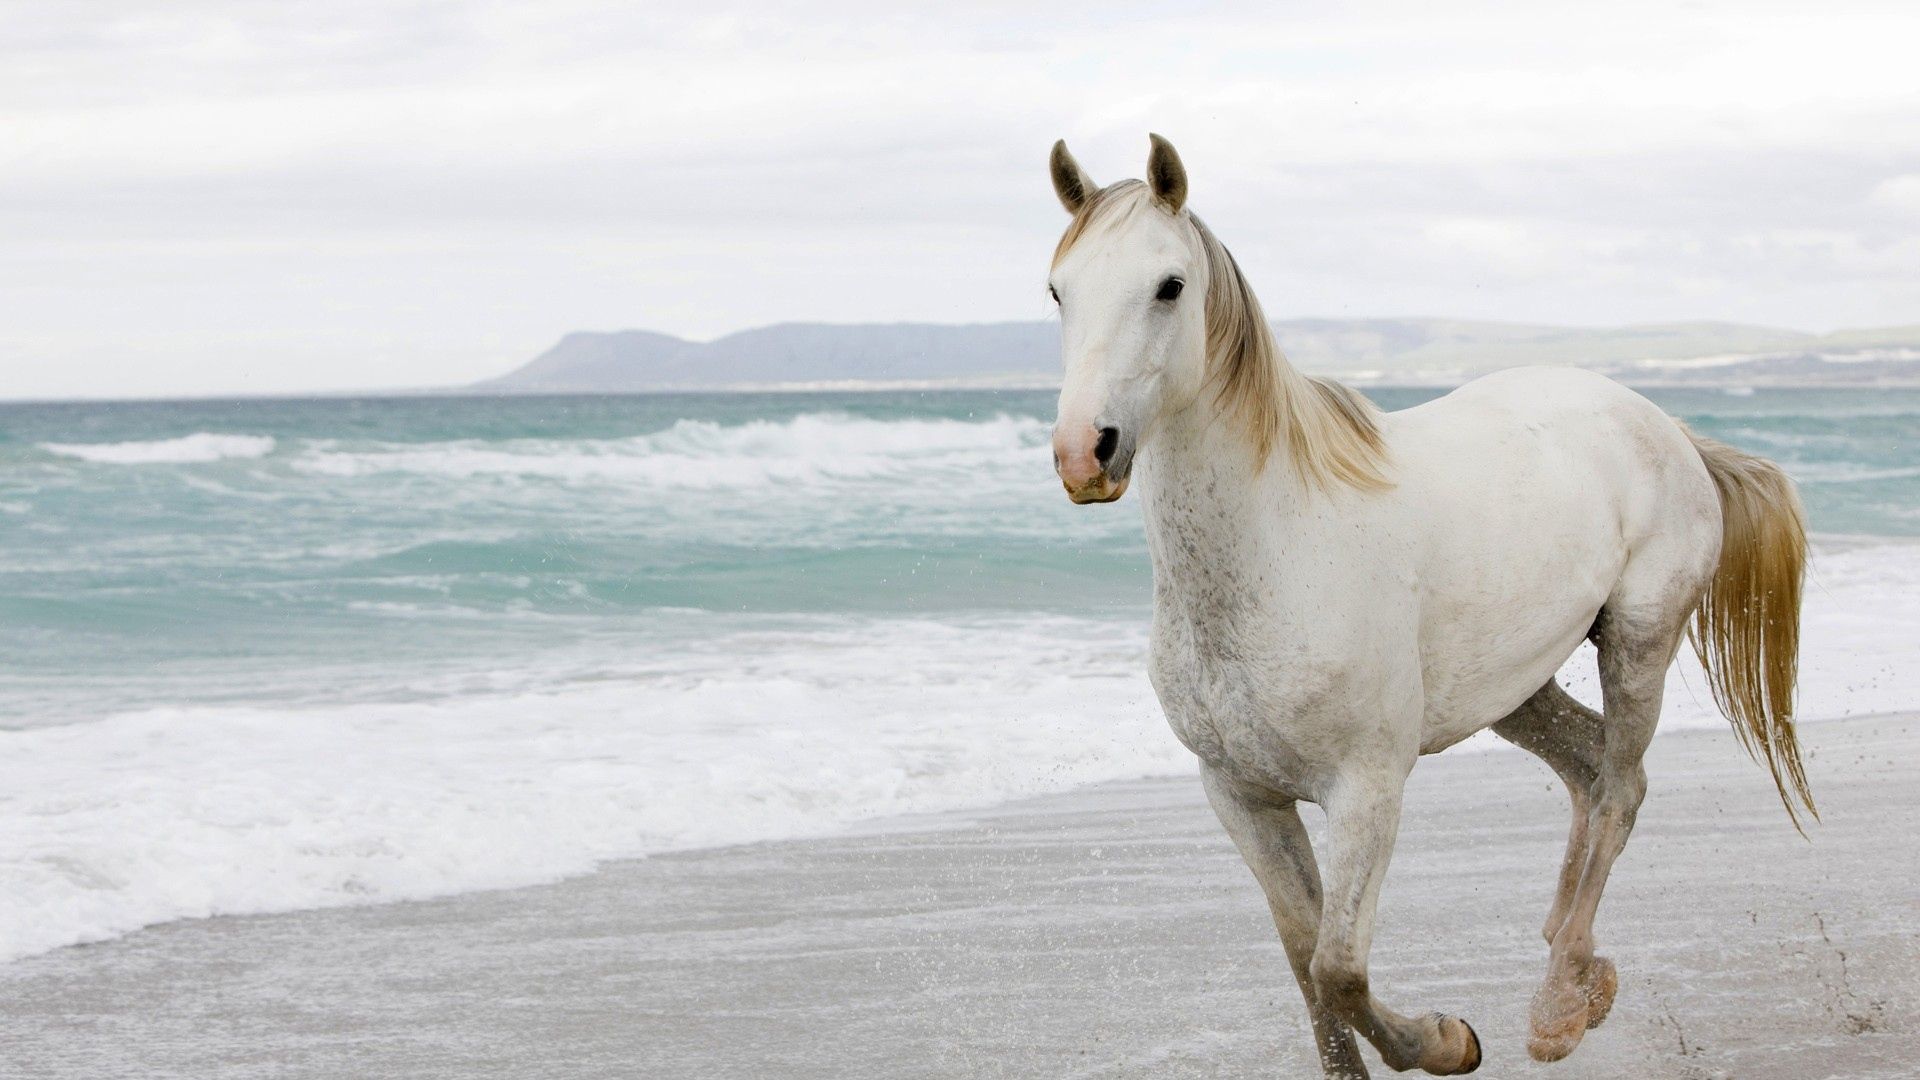 Download Wallpaper 1920x1080 White horse, Sand, Sea, Escape Full